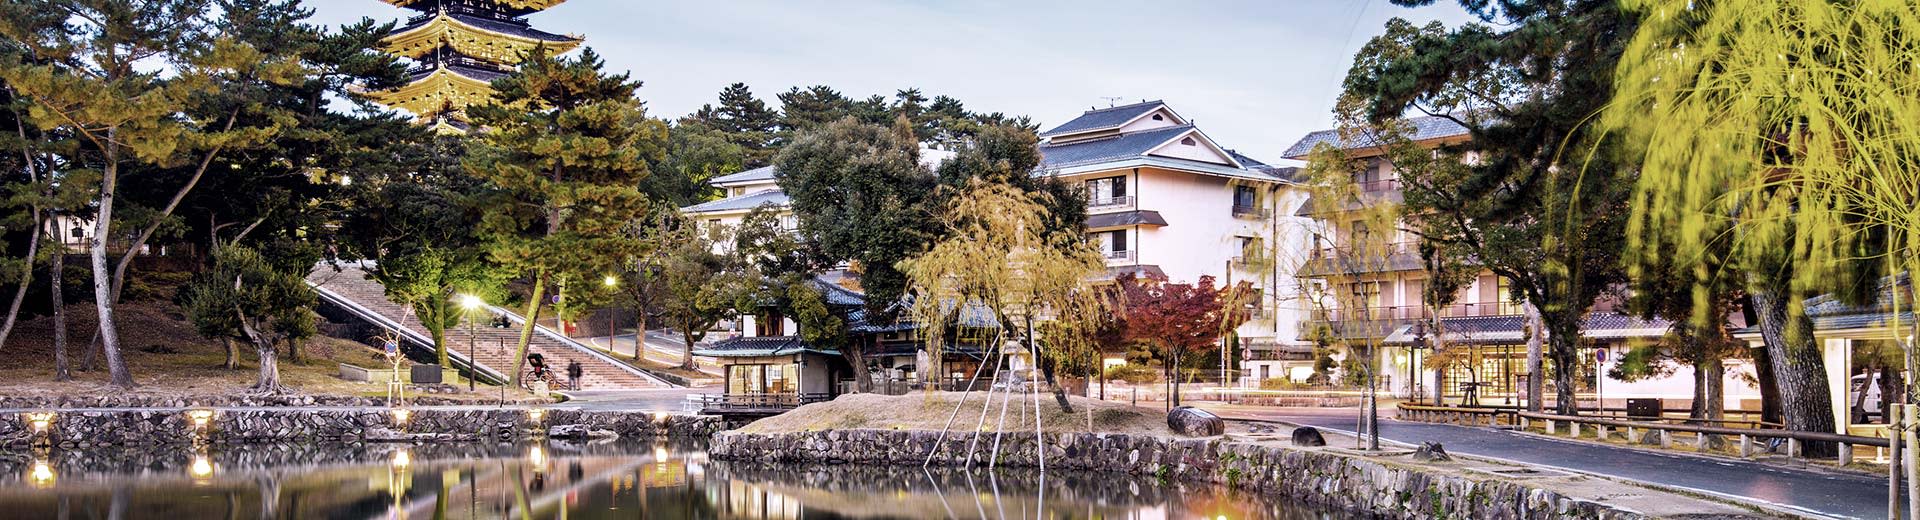 Un edificio tradicional de templa en el fondo de Nara, con un pequeño lago en el frente.